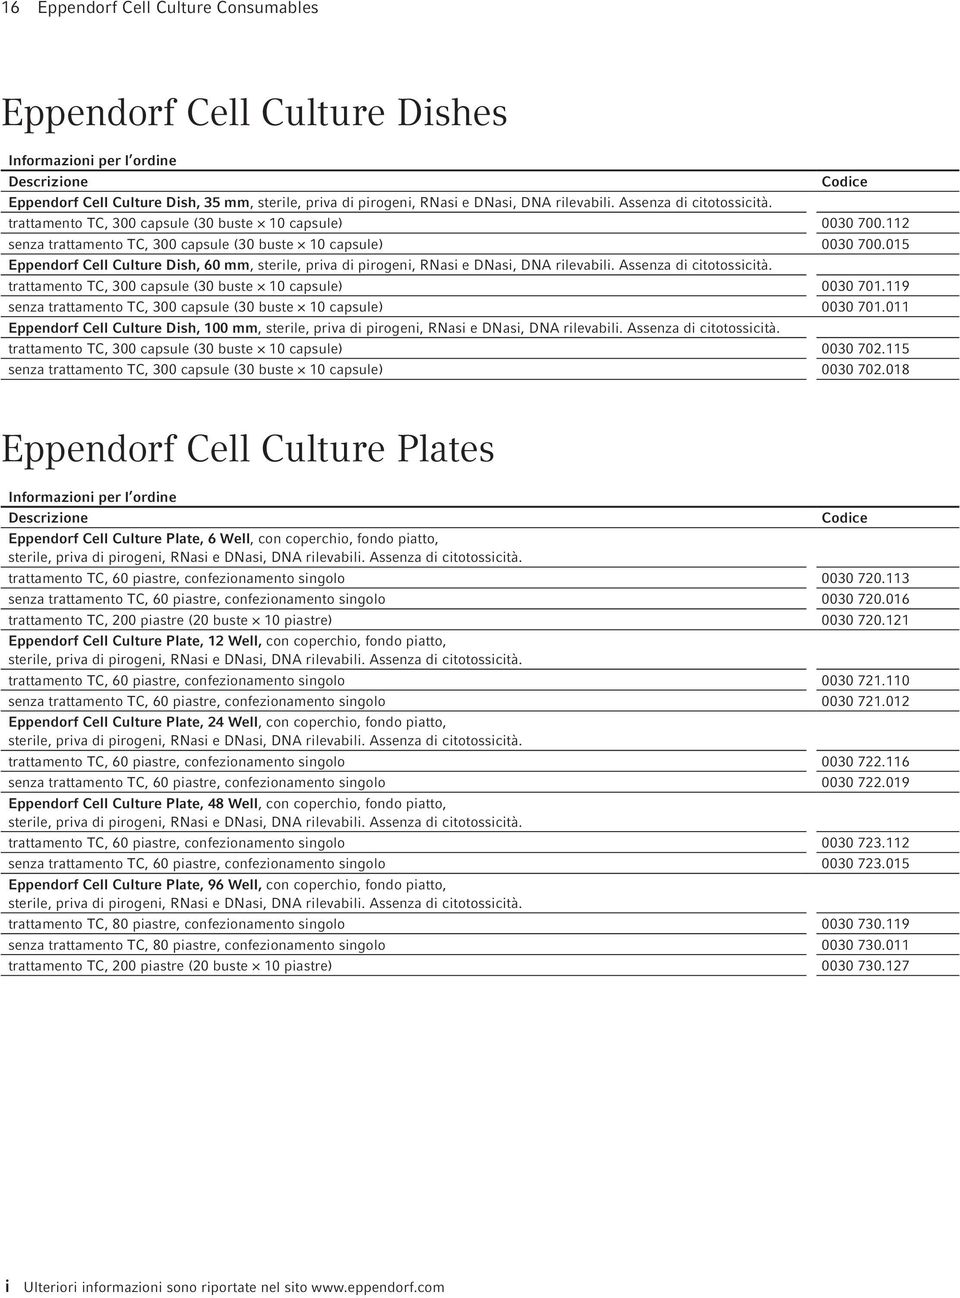 015 Eppendorf Cell Culture Dish, 60 mm, sterile, priva di pirogeni, RNasi e DNasi, DNA rilevabili. Assenza di citotossicità. trattamento TC, 300 capsule (30 buste 10 capsule) 0030 701.